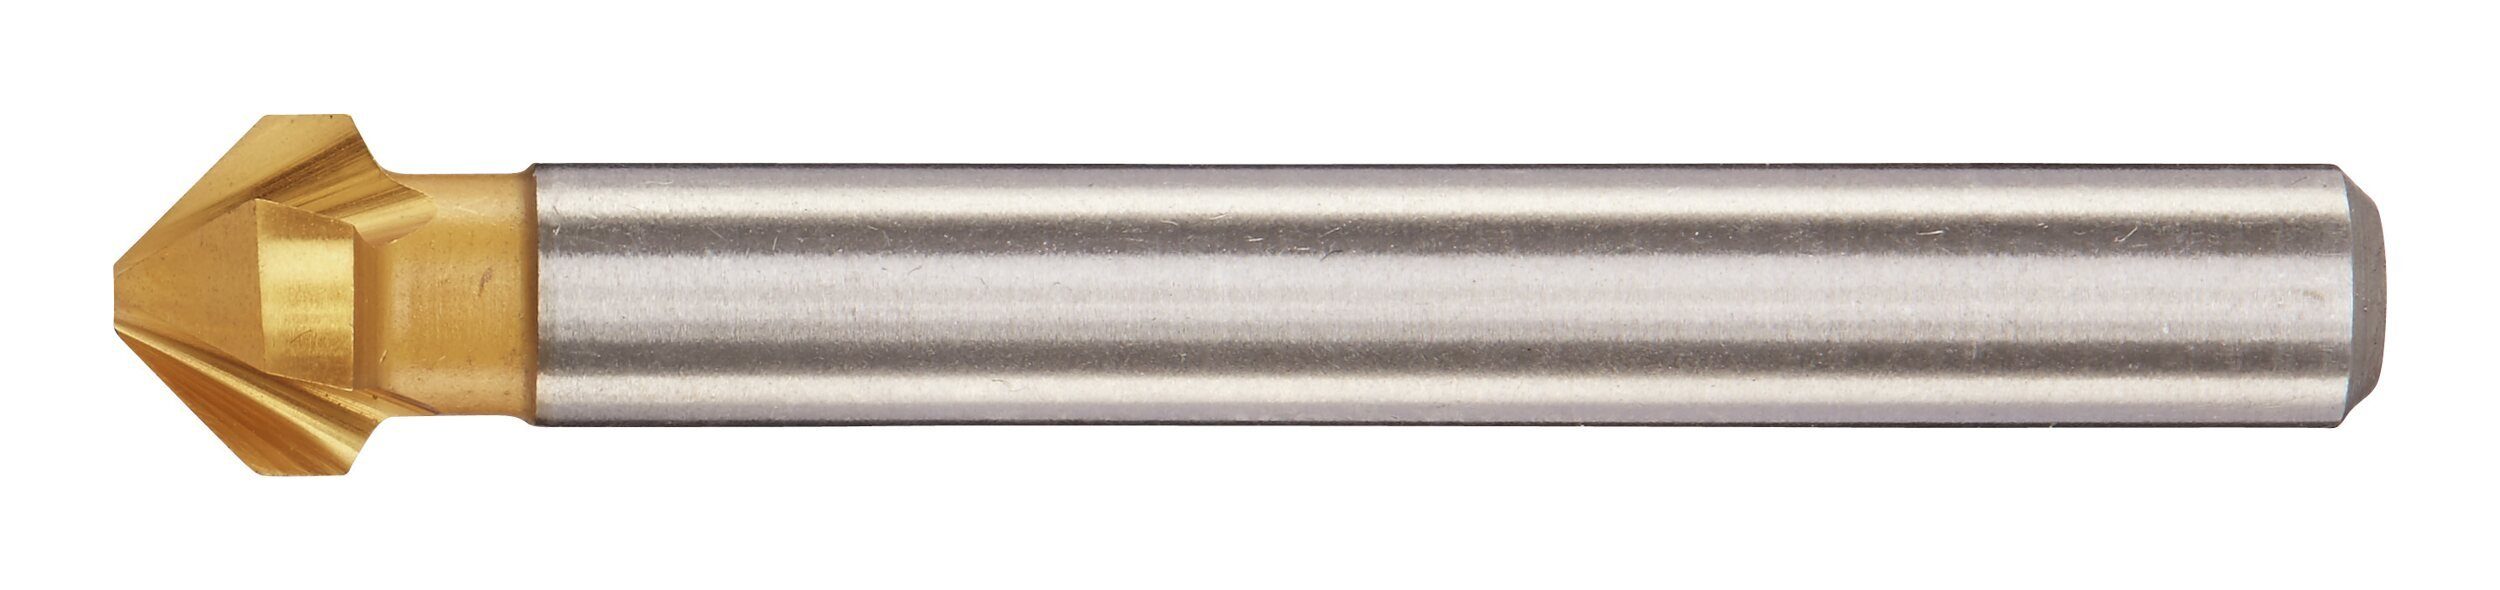 HSS mm fortis Metallbohrer, 12,4 TiN 90G Kegelsenker D335C